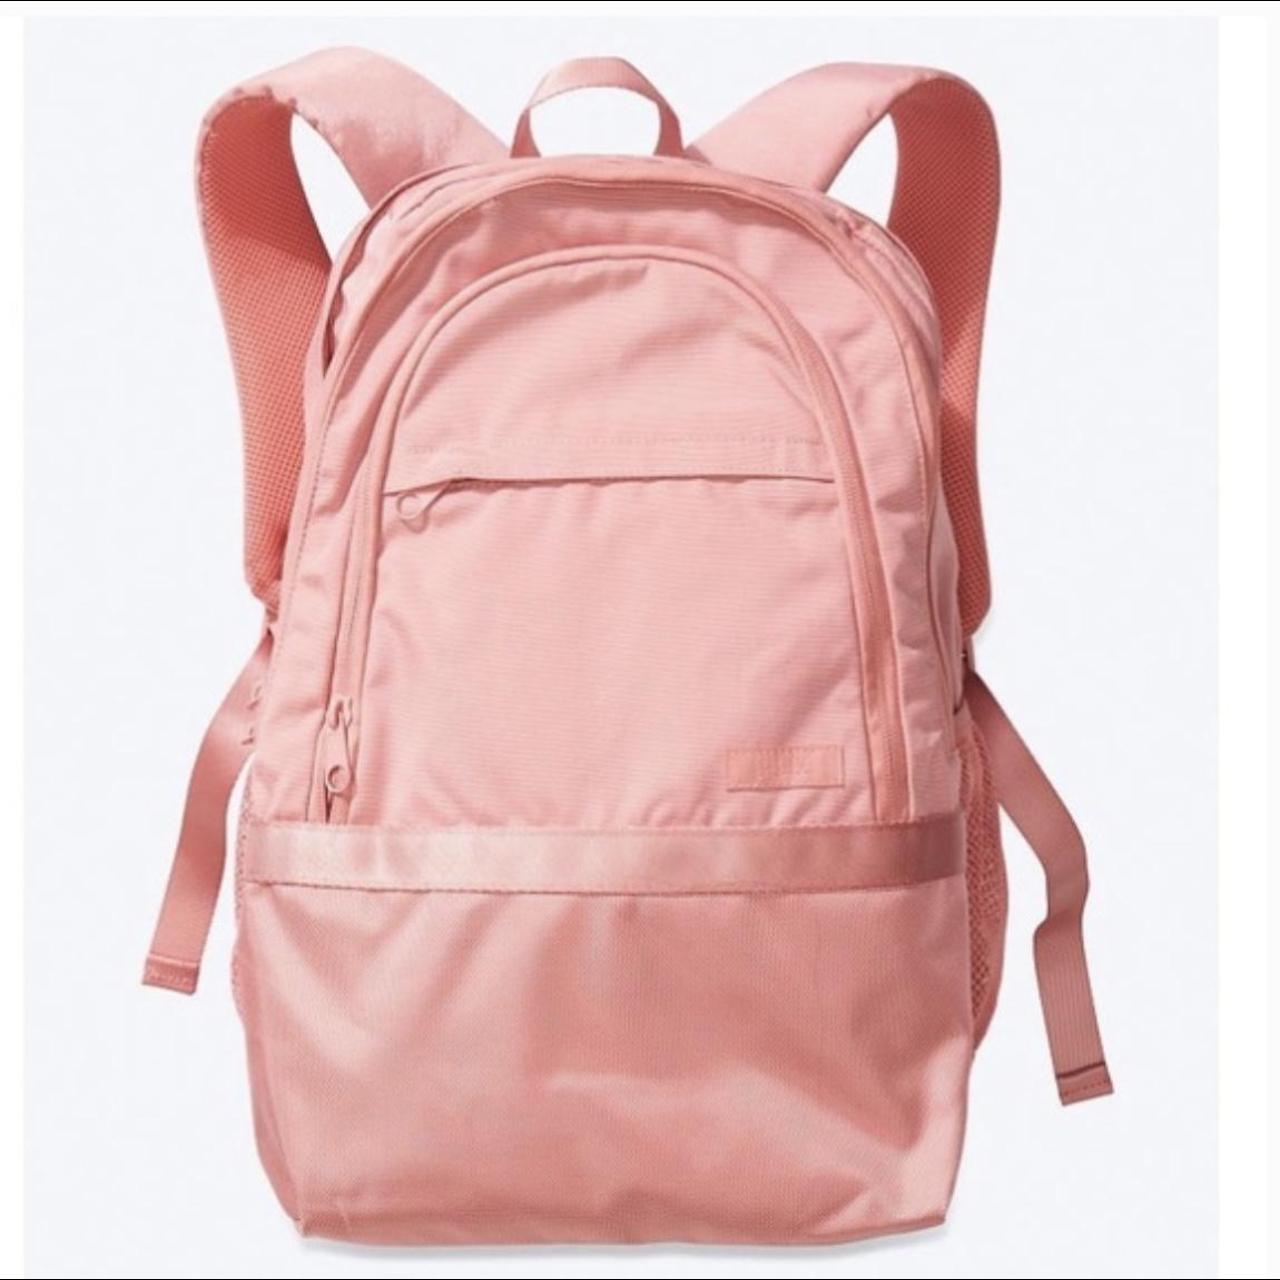 Victoria's Secret School Backpacks